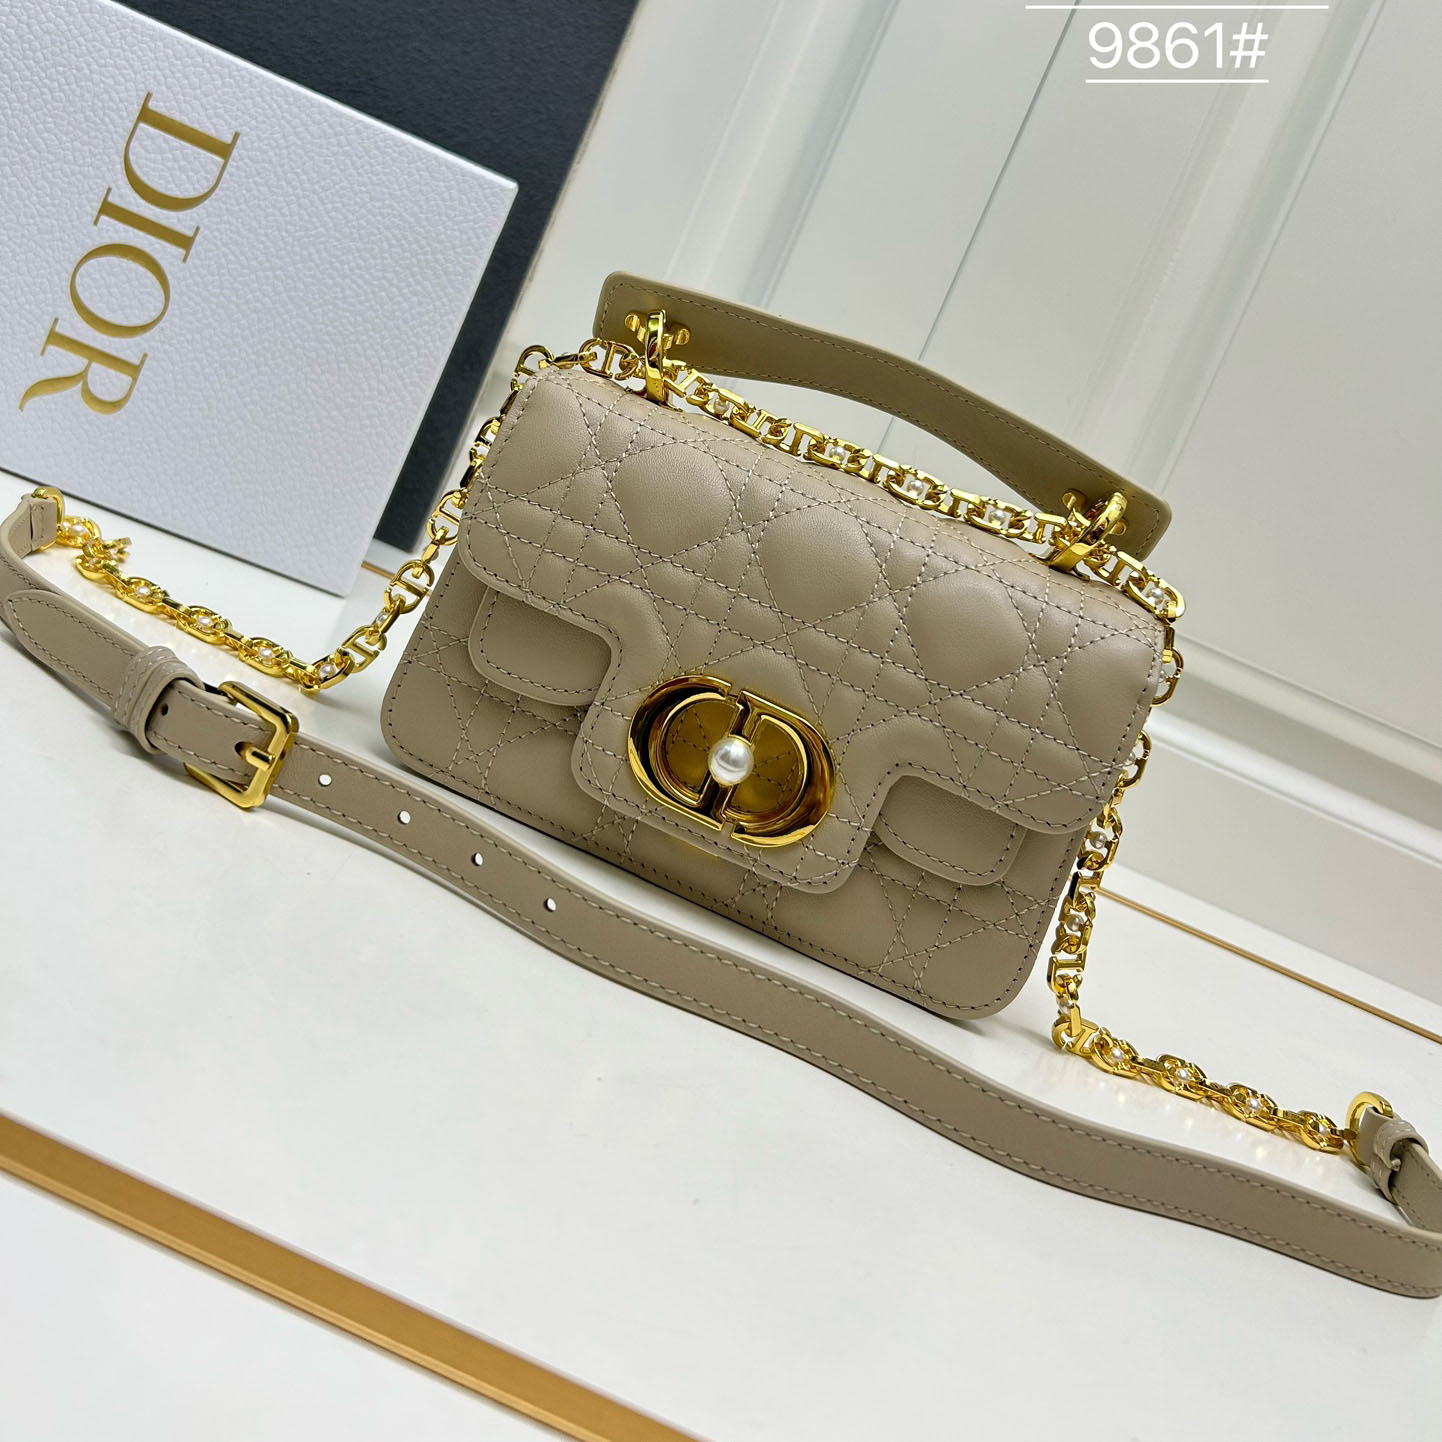 Dior Jolie トップハンドルバッグ スモール クリスチャン・ディオール バッグ コピー ベージュ